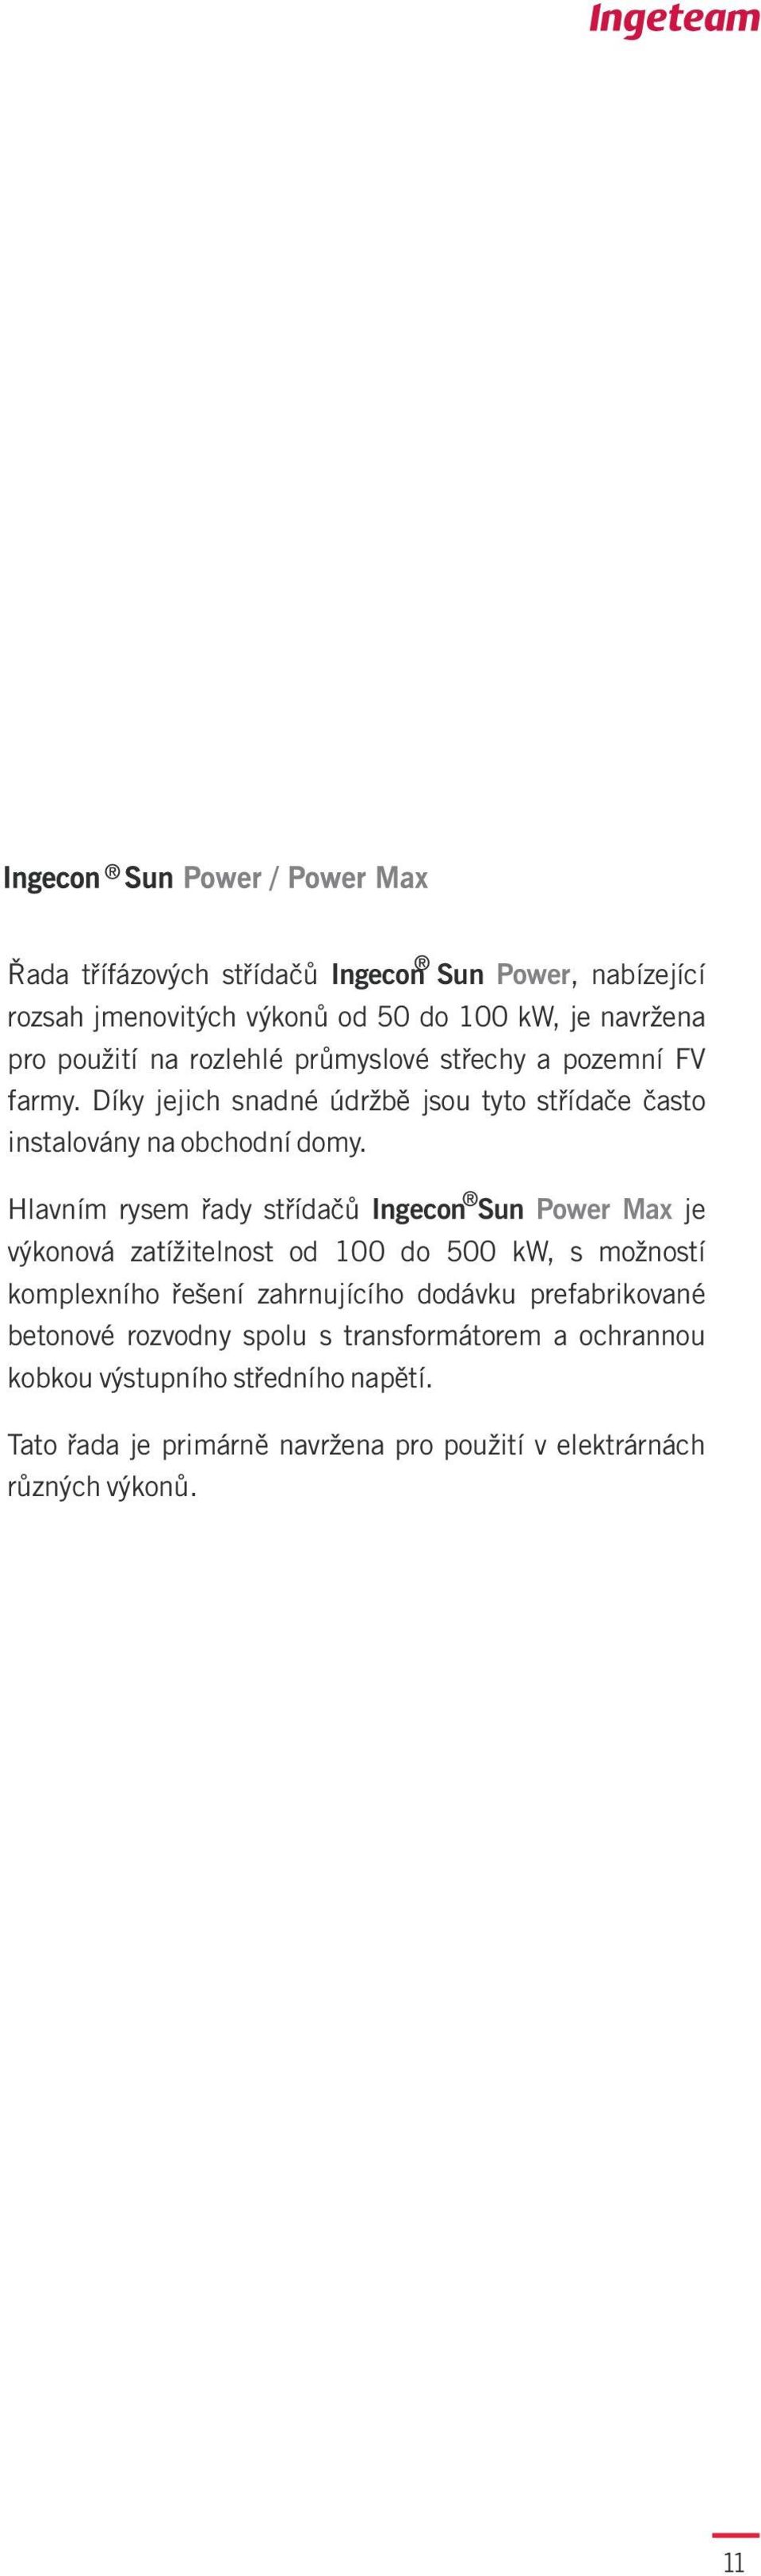 Hlavním rysem øady støídaèù Ingecon Sun Power Max je výkonová zatížitelnost od 00 do 500 kw, s možností komplexního øešení zahrnujícího dodávku